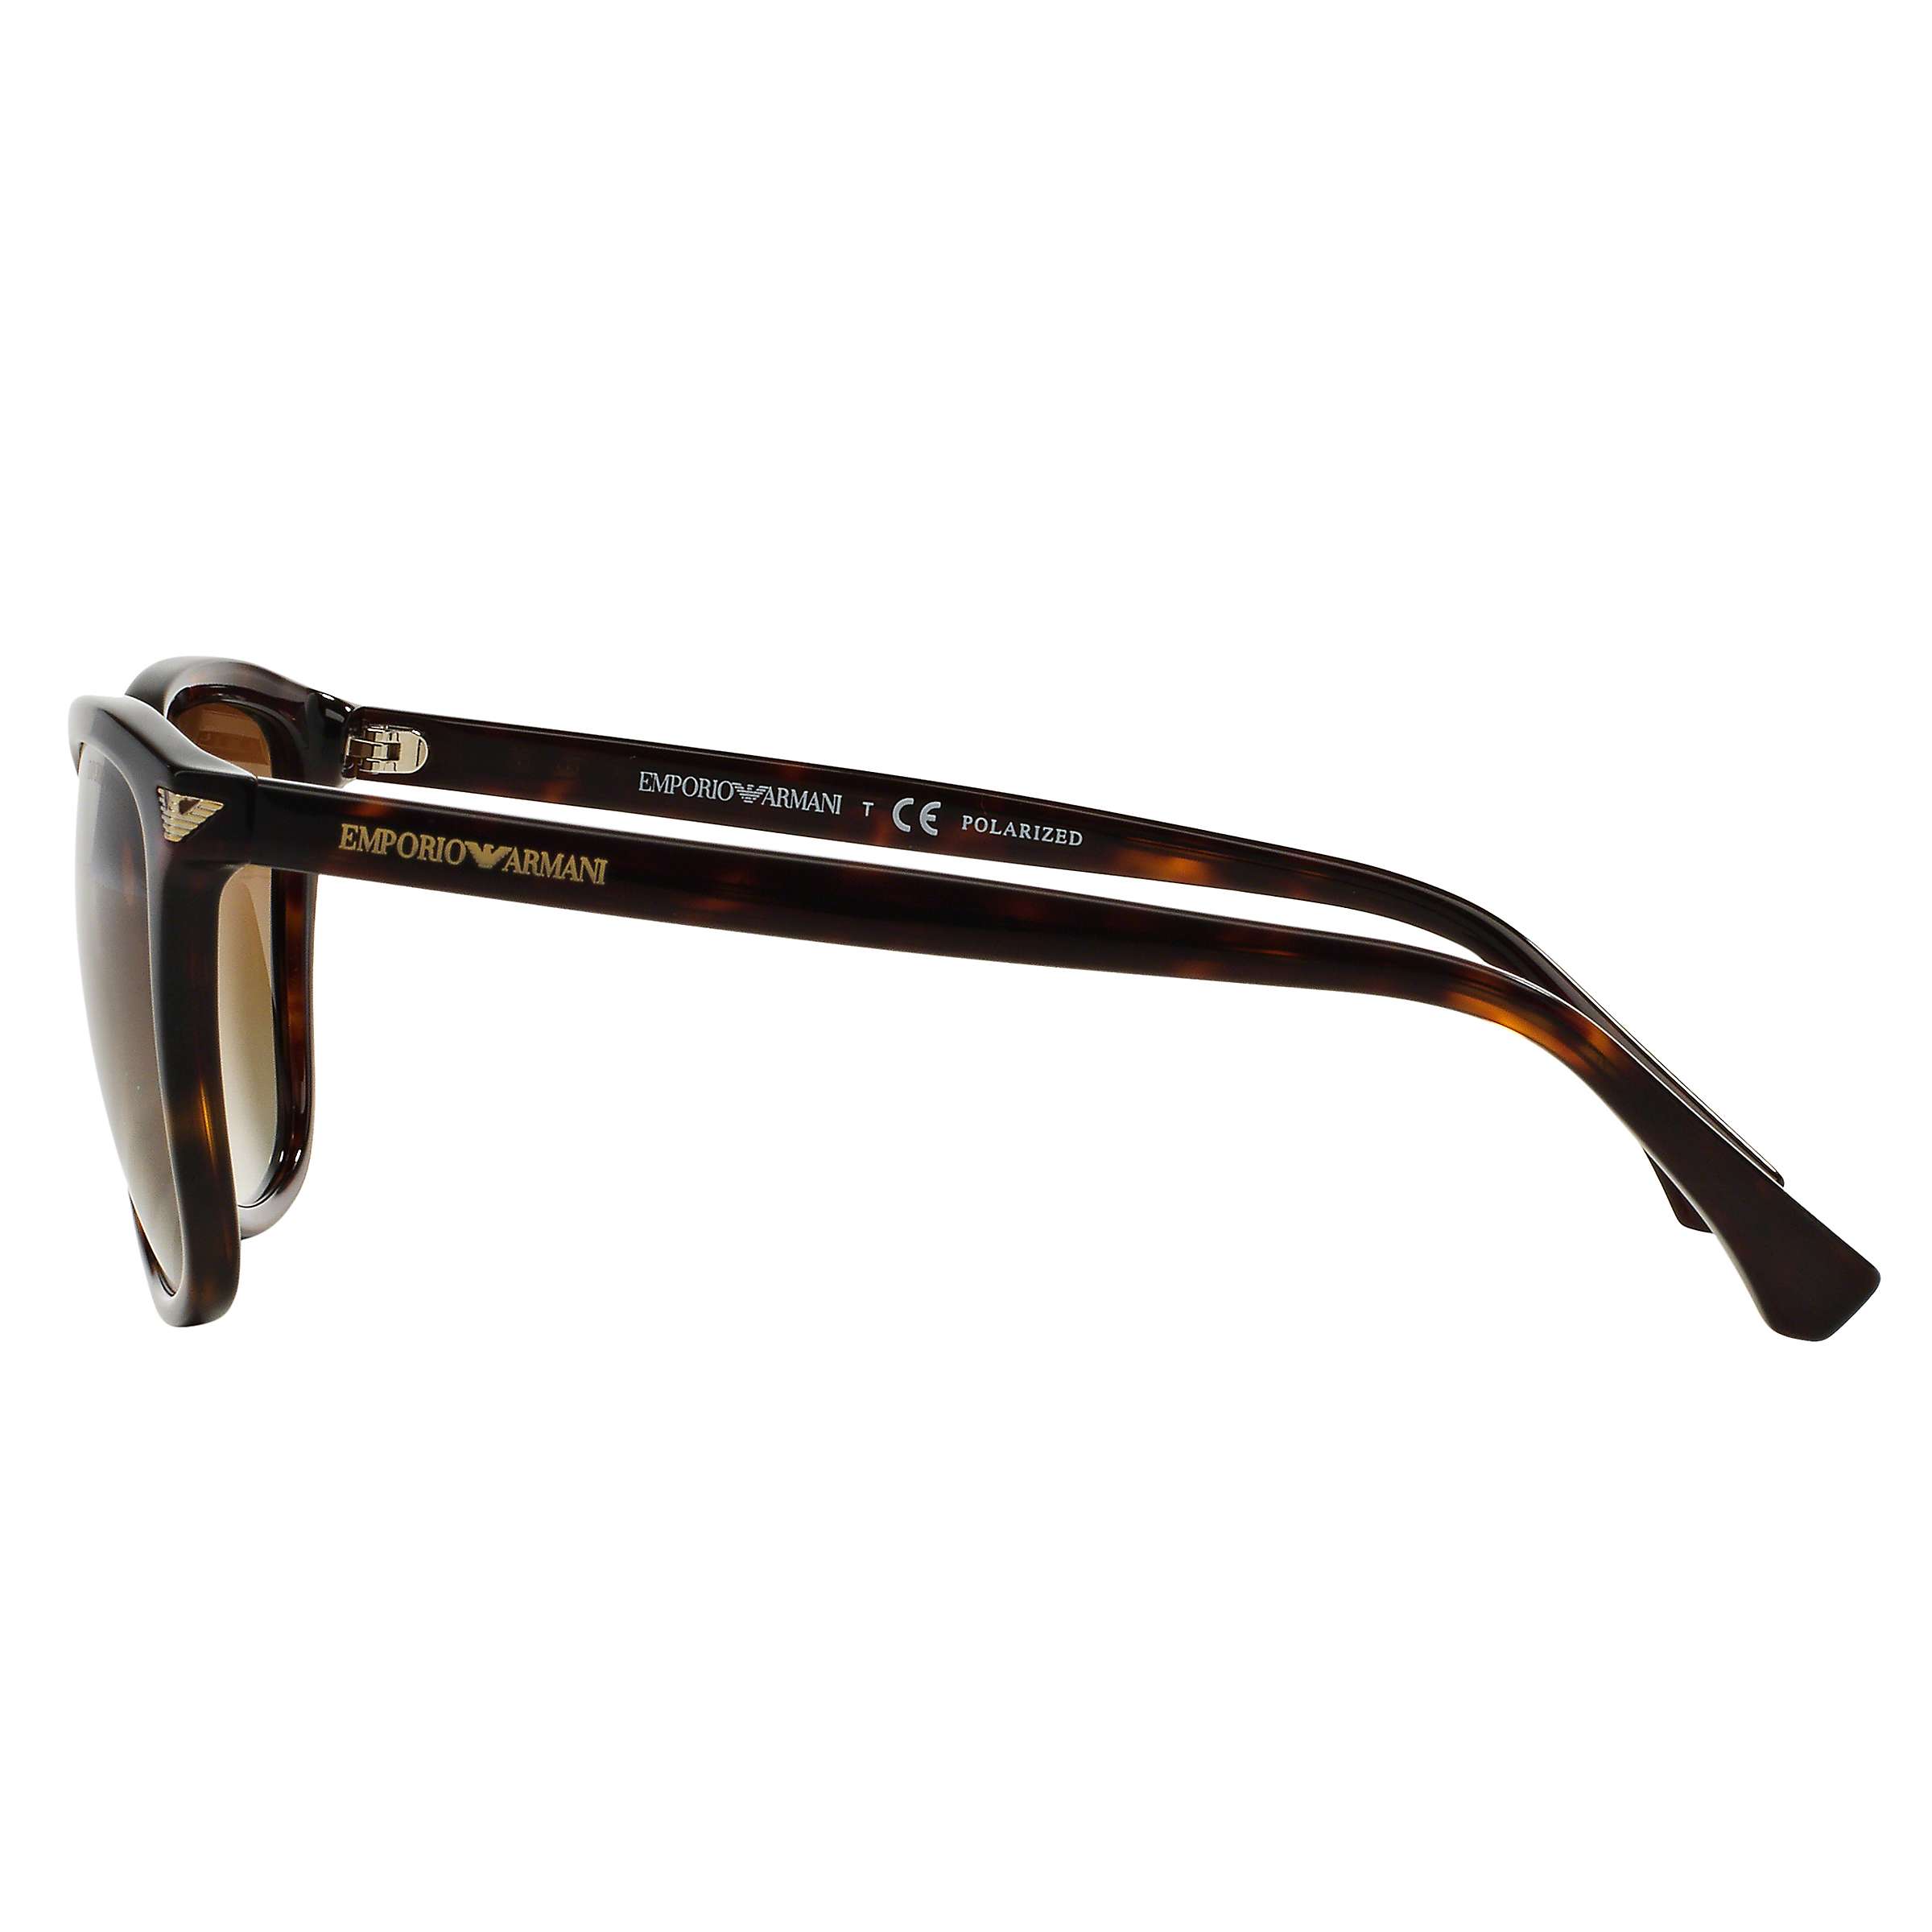 Buy Emporio Armani EA4060 Women's Polarised Square Sunglasses, Tortoise Online at johnlewis.com